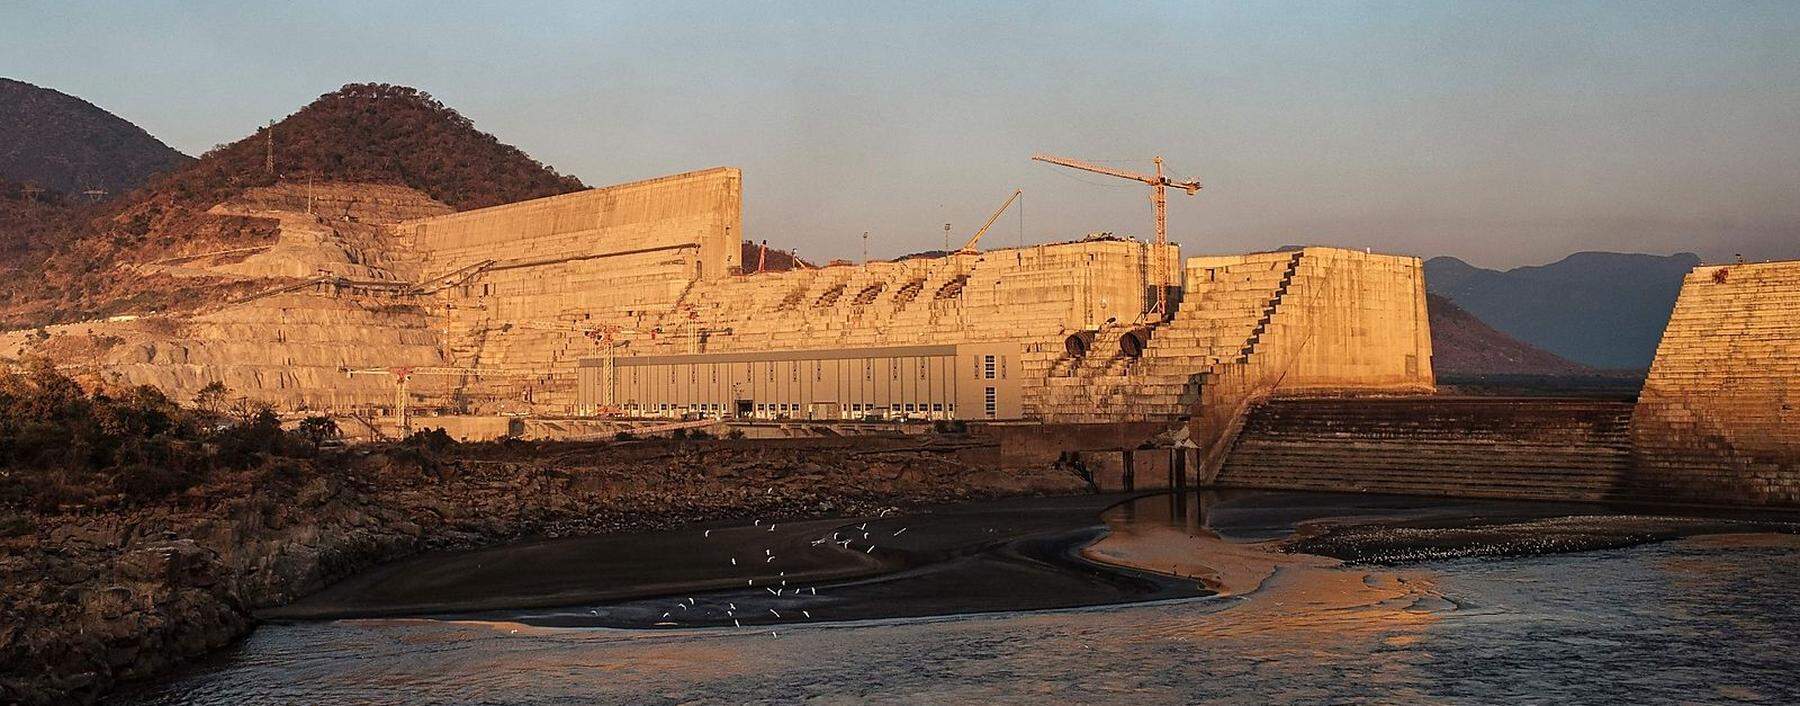 Bau an der großen Talsperre &quot;Grand Ethiopian Renaissance Dam&quot; in der Nähe der Stadt Guba.